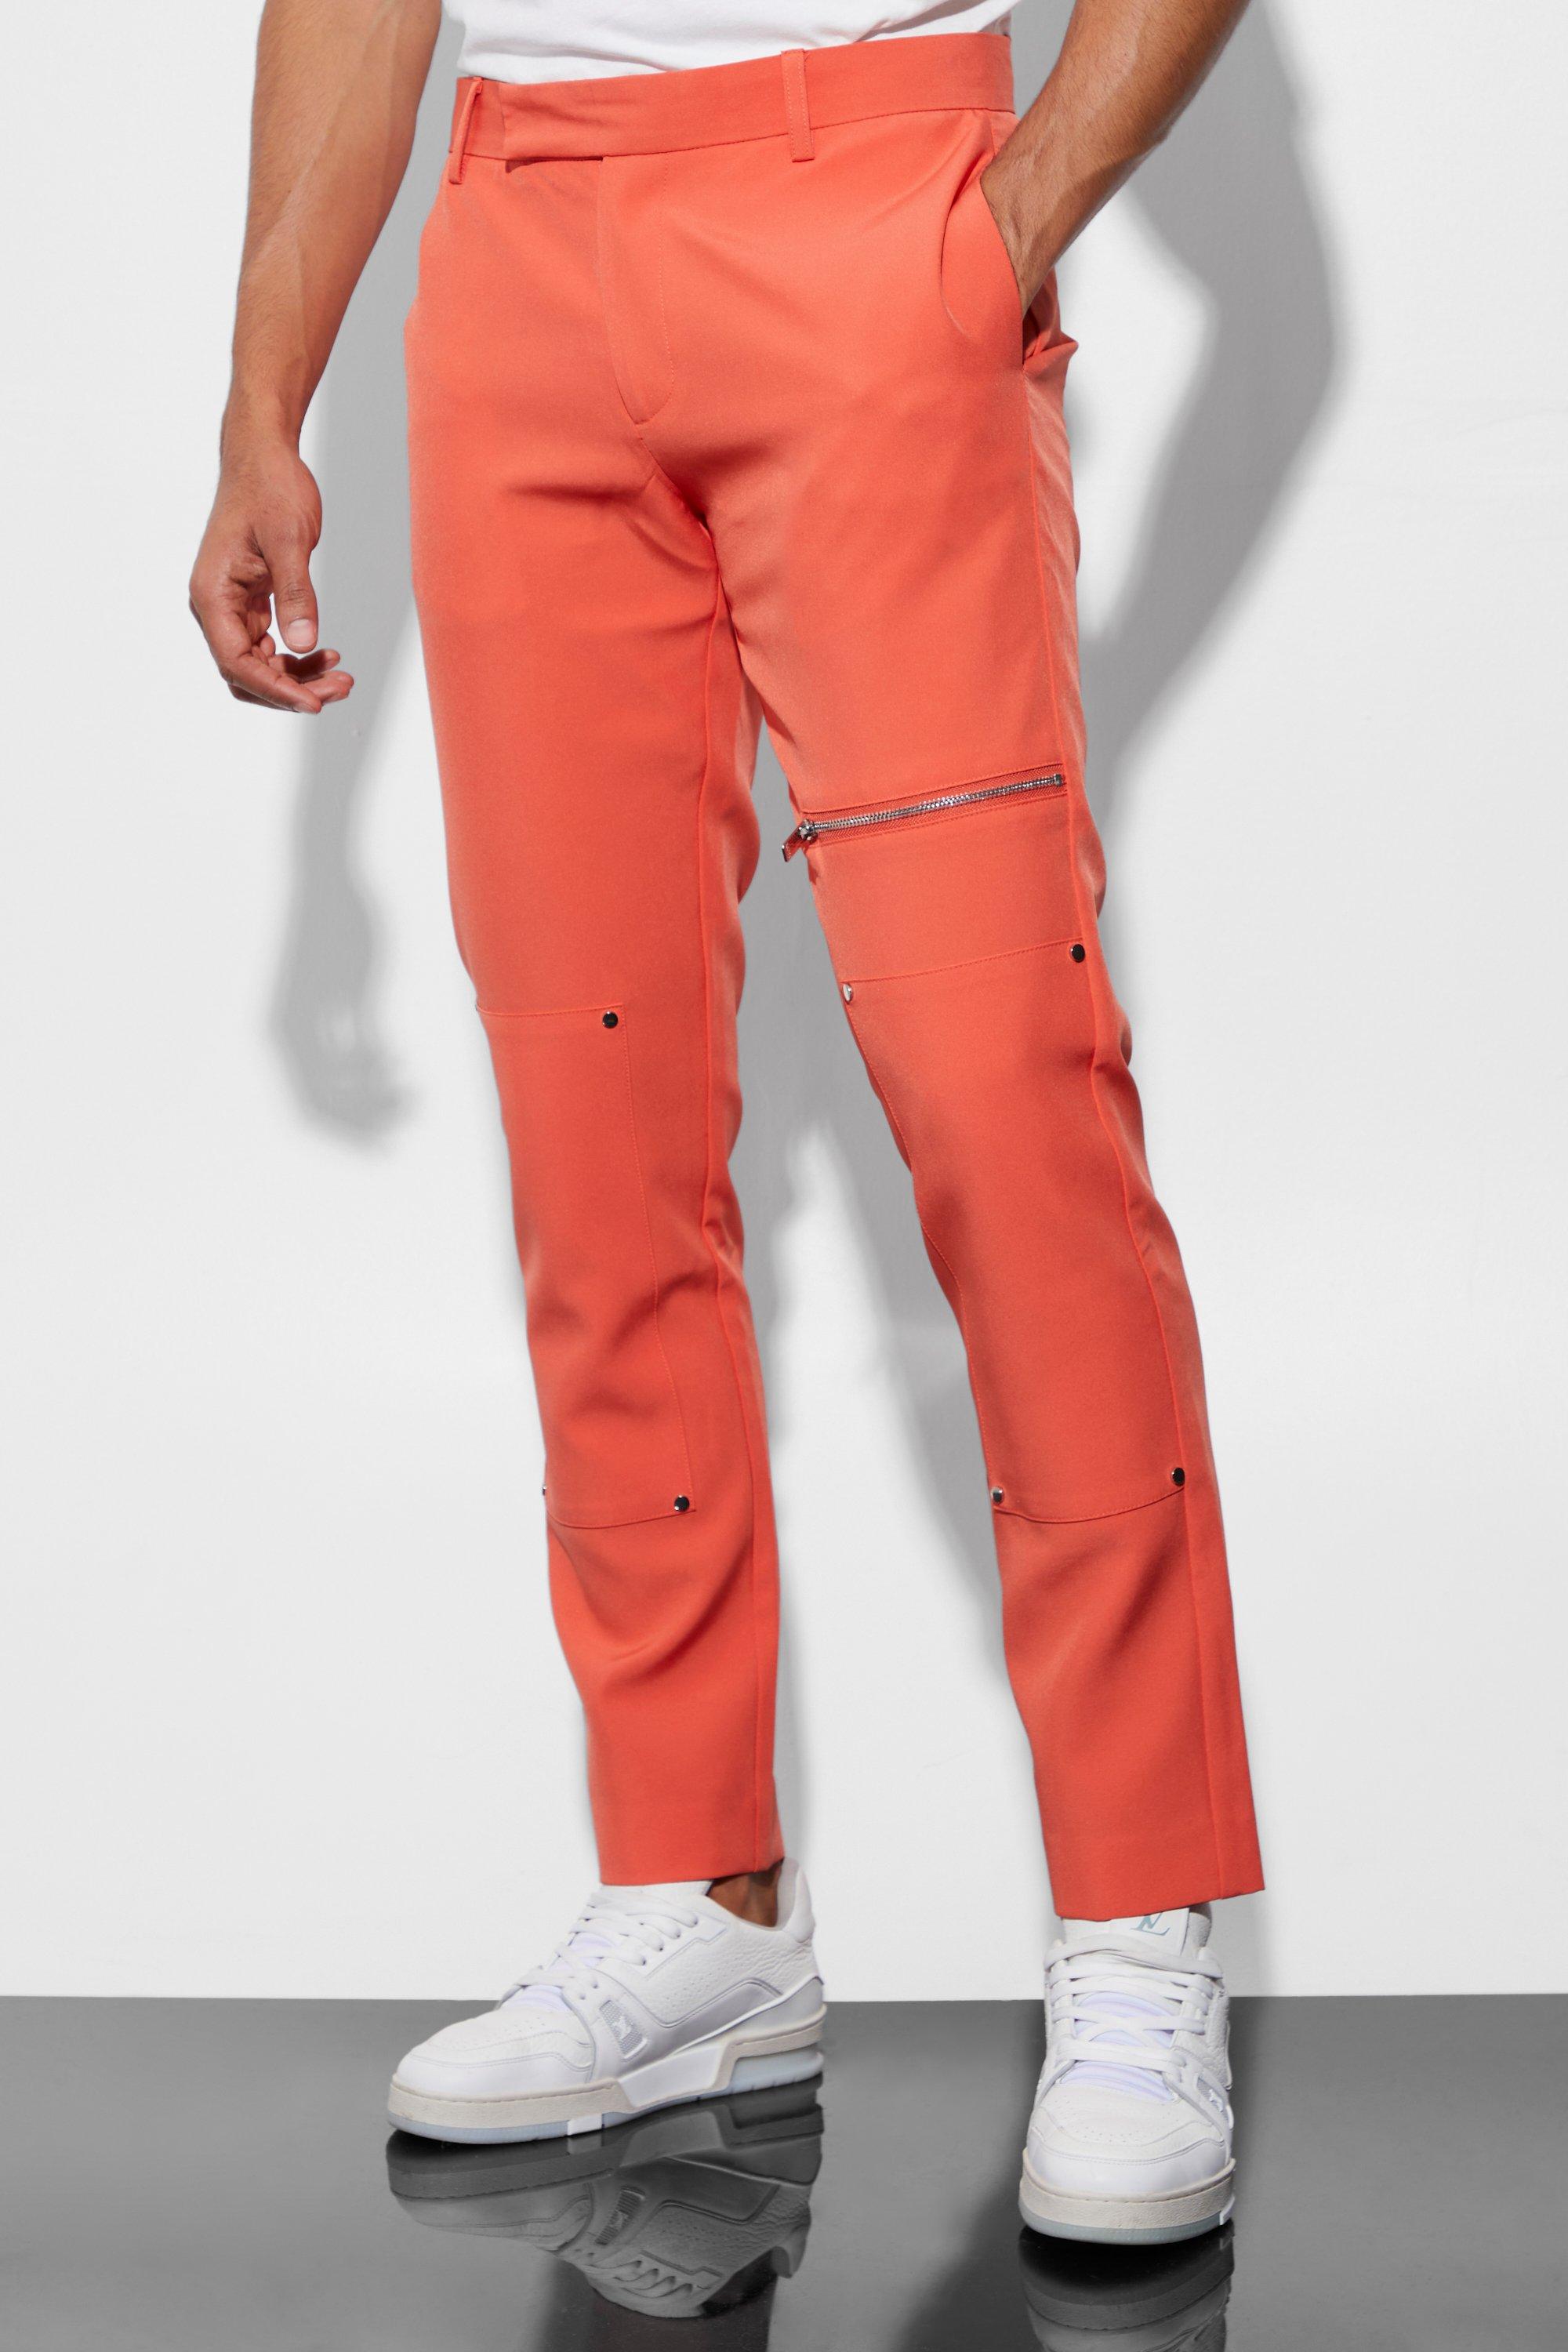 pantalon de costume skinny homme - orange - 30r, orange